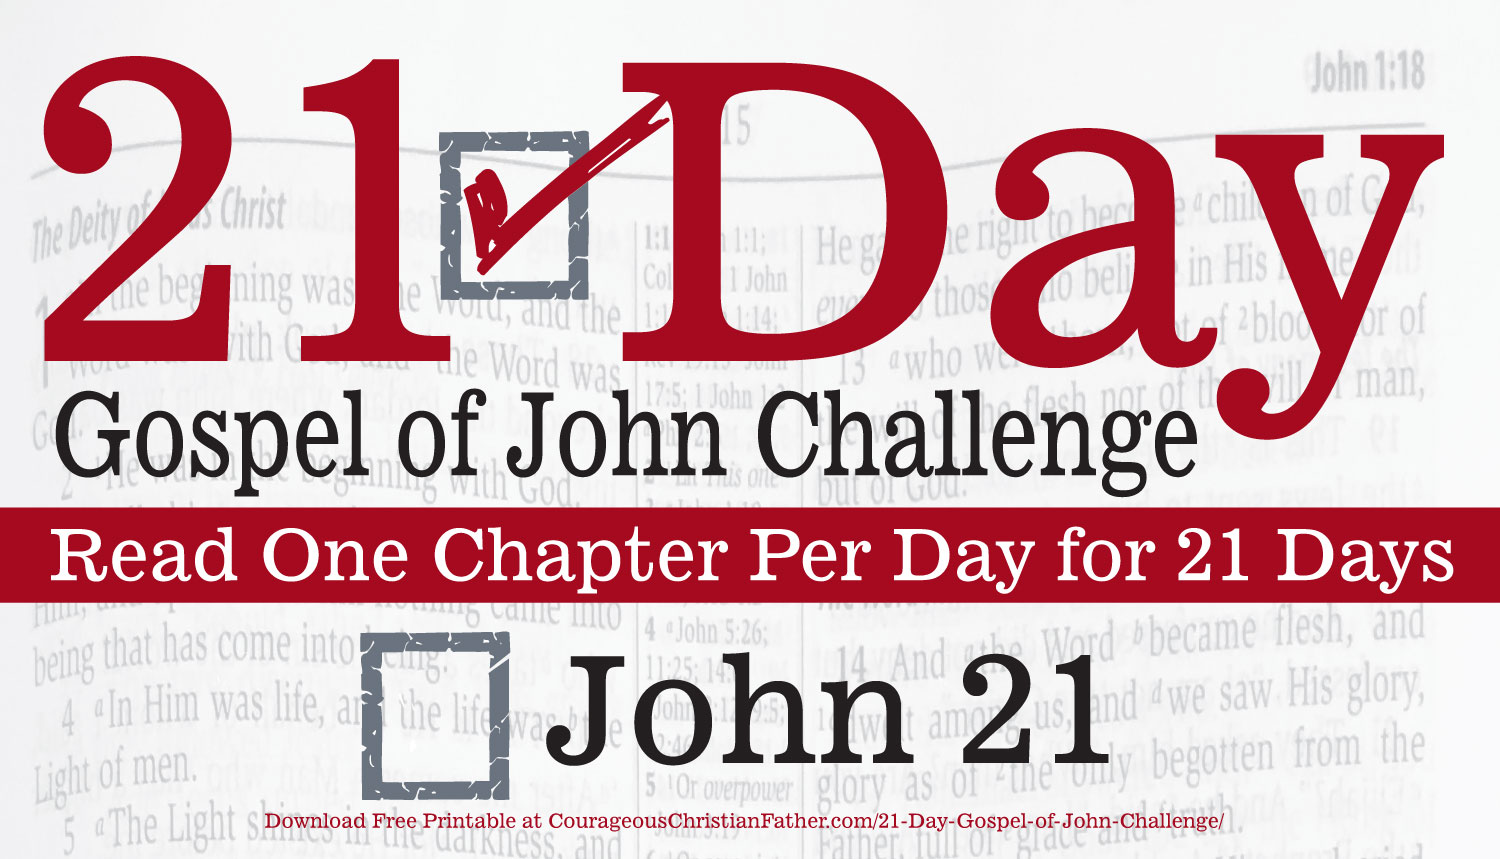 John 21 - Today is Day 21 of the 21 Day Gospel of John Challenge. Read the 21st Chapter of the Gospel of John. #John21 #BGBG2